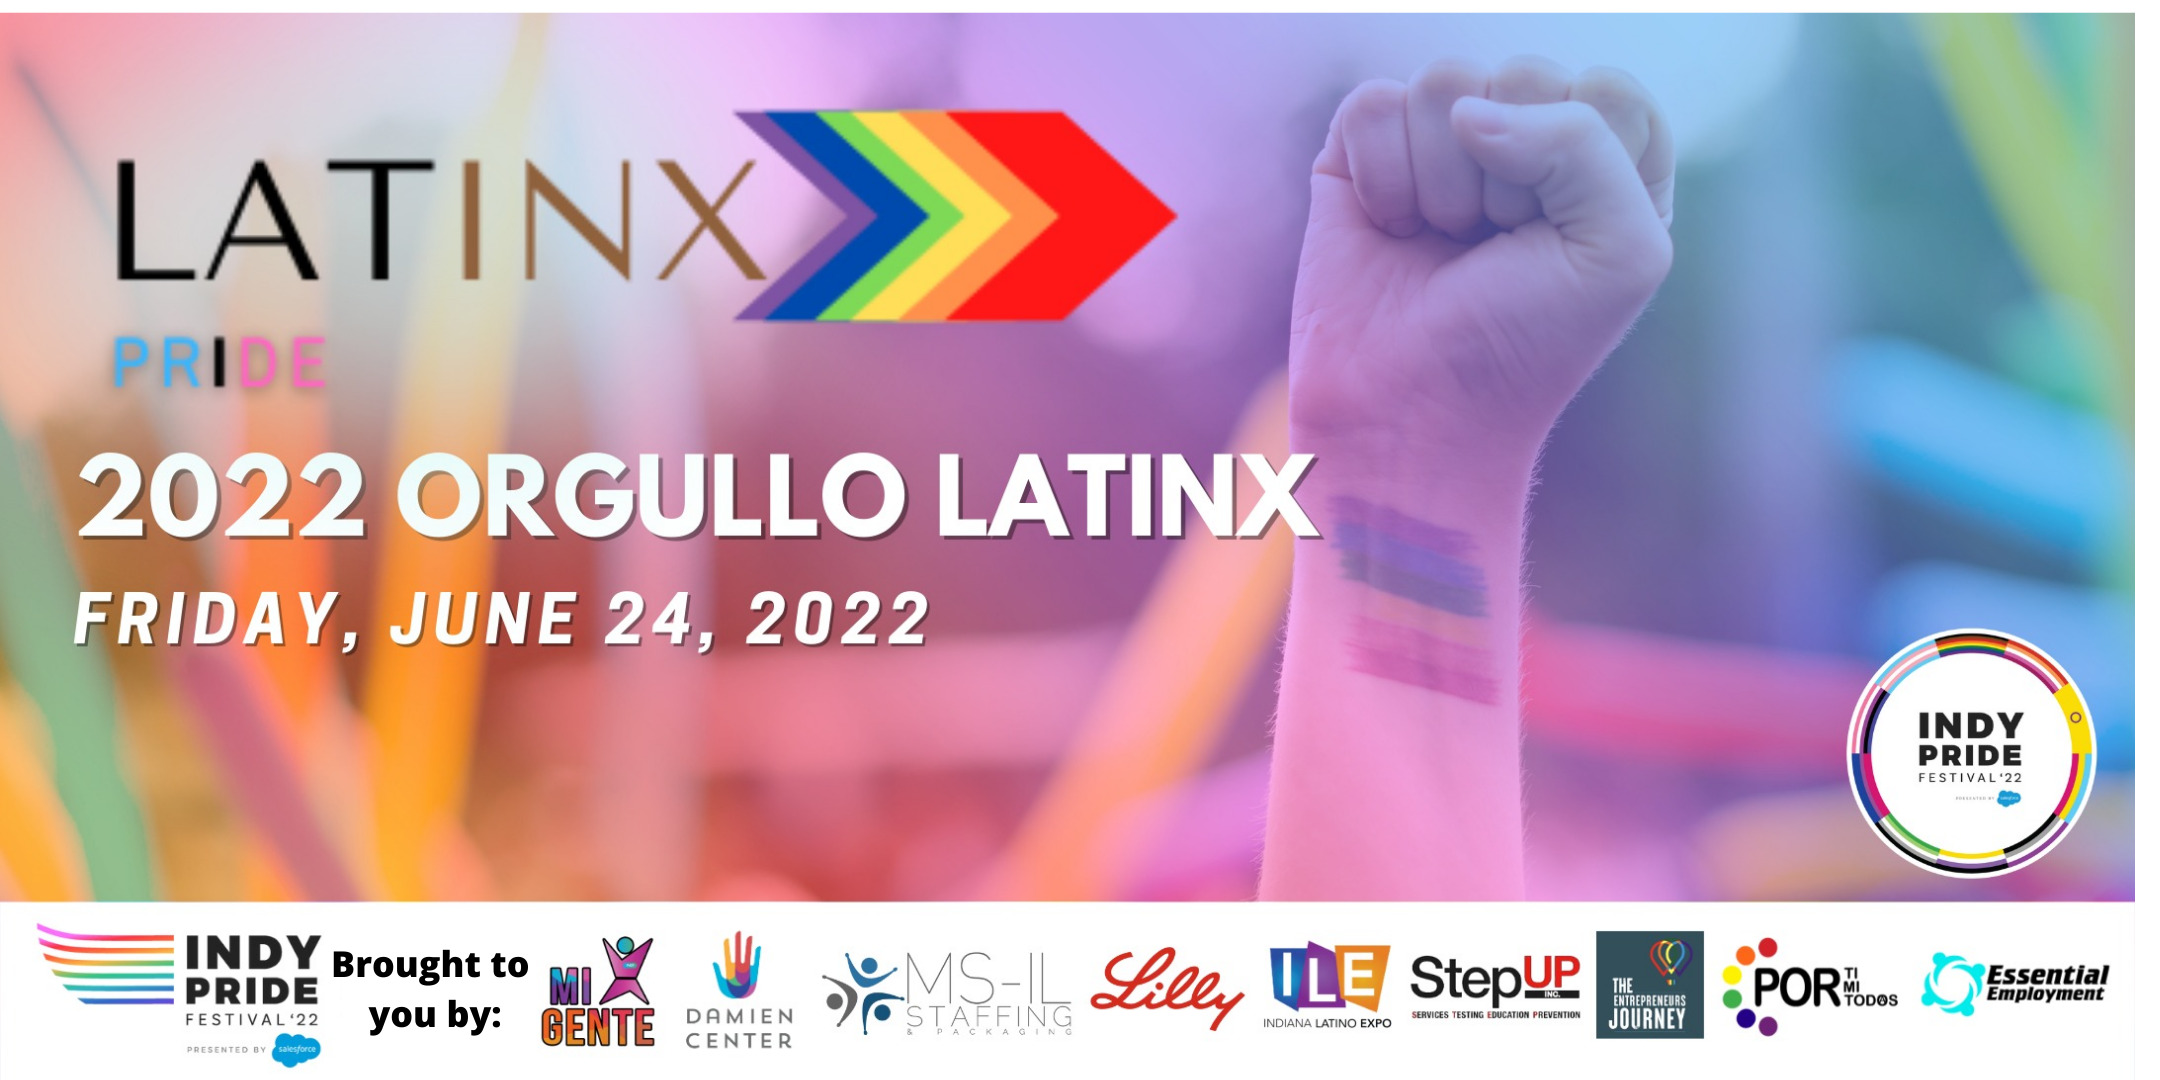 Latinx Pride: 2022 Orgullo Latinx